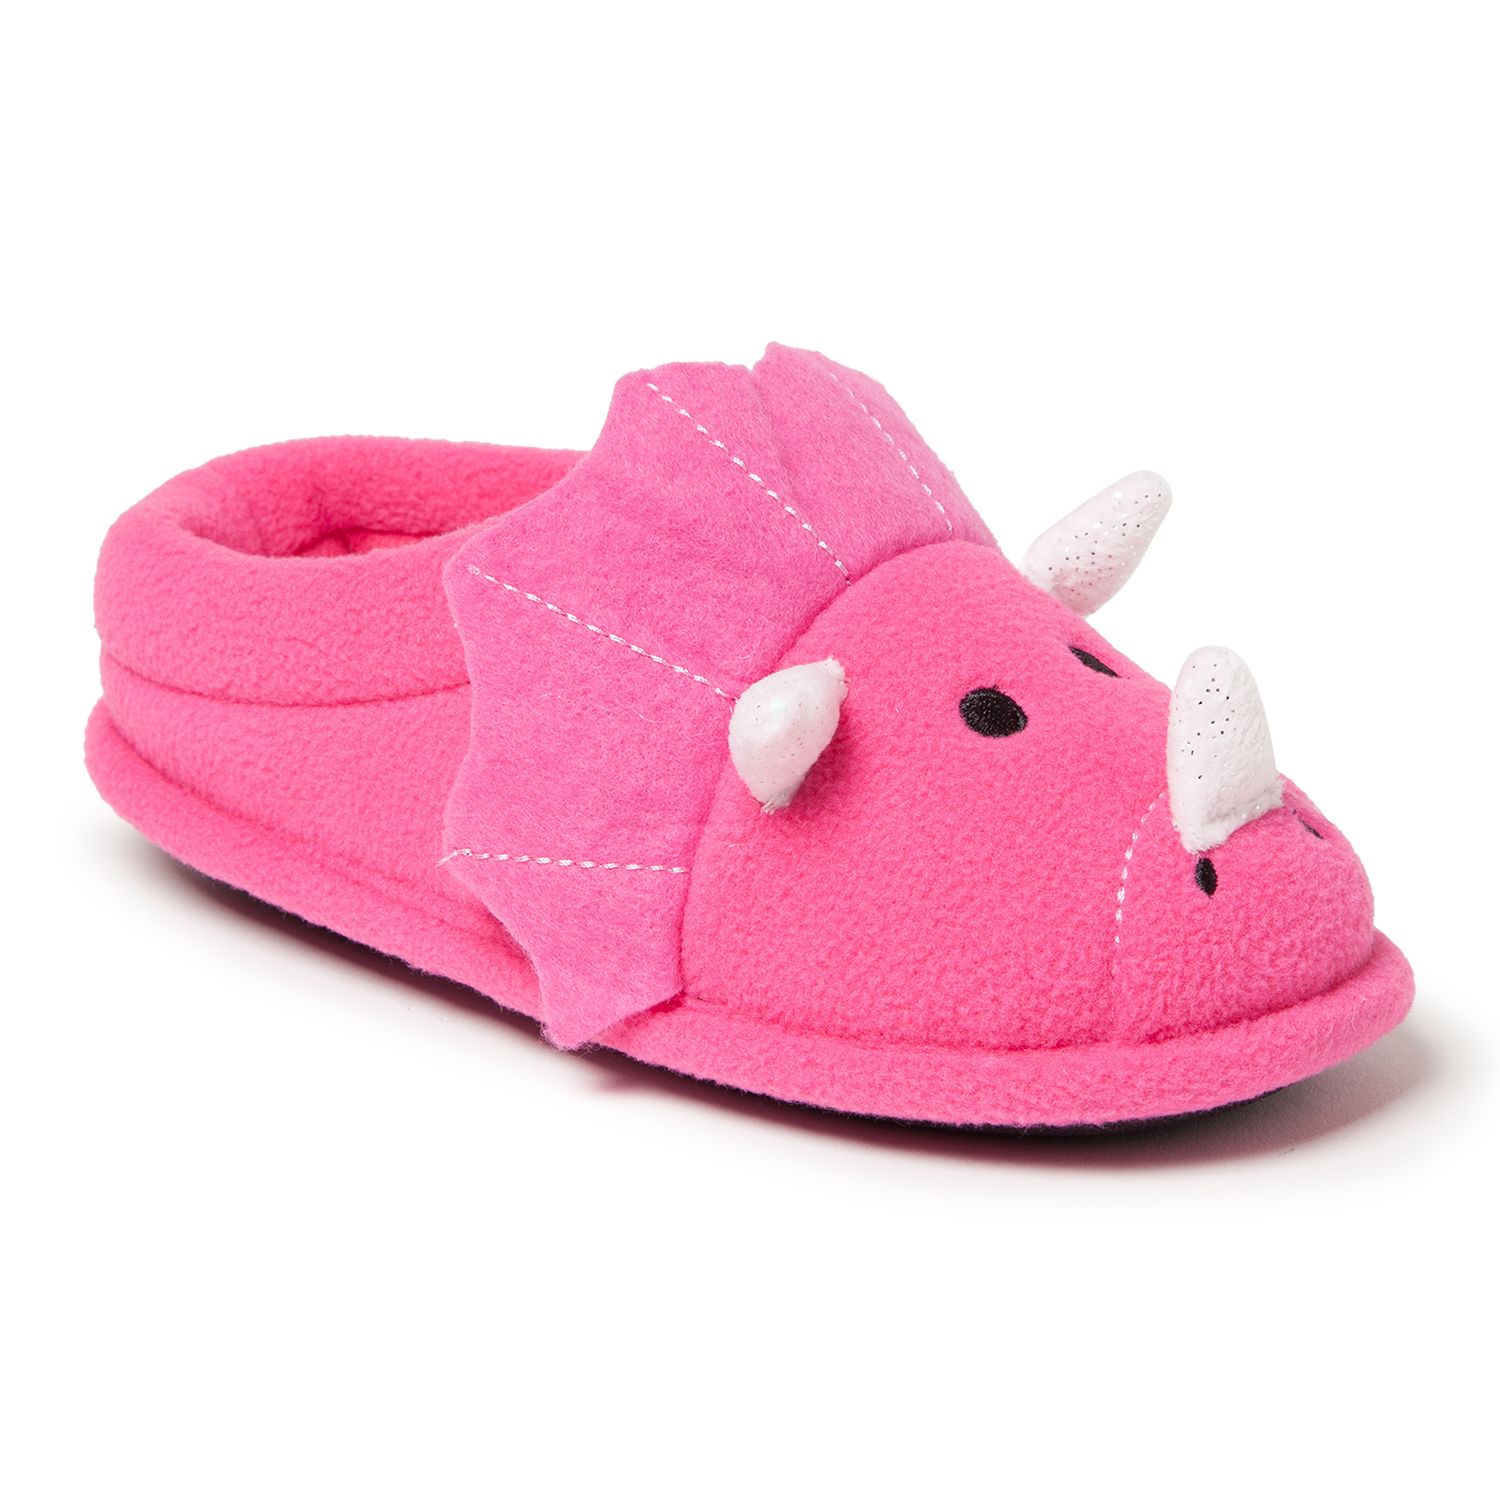 dinosaur slippers for girls